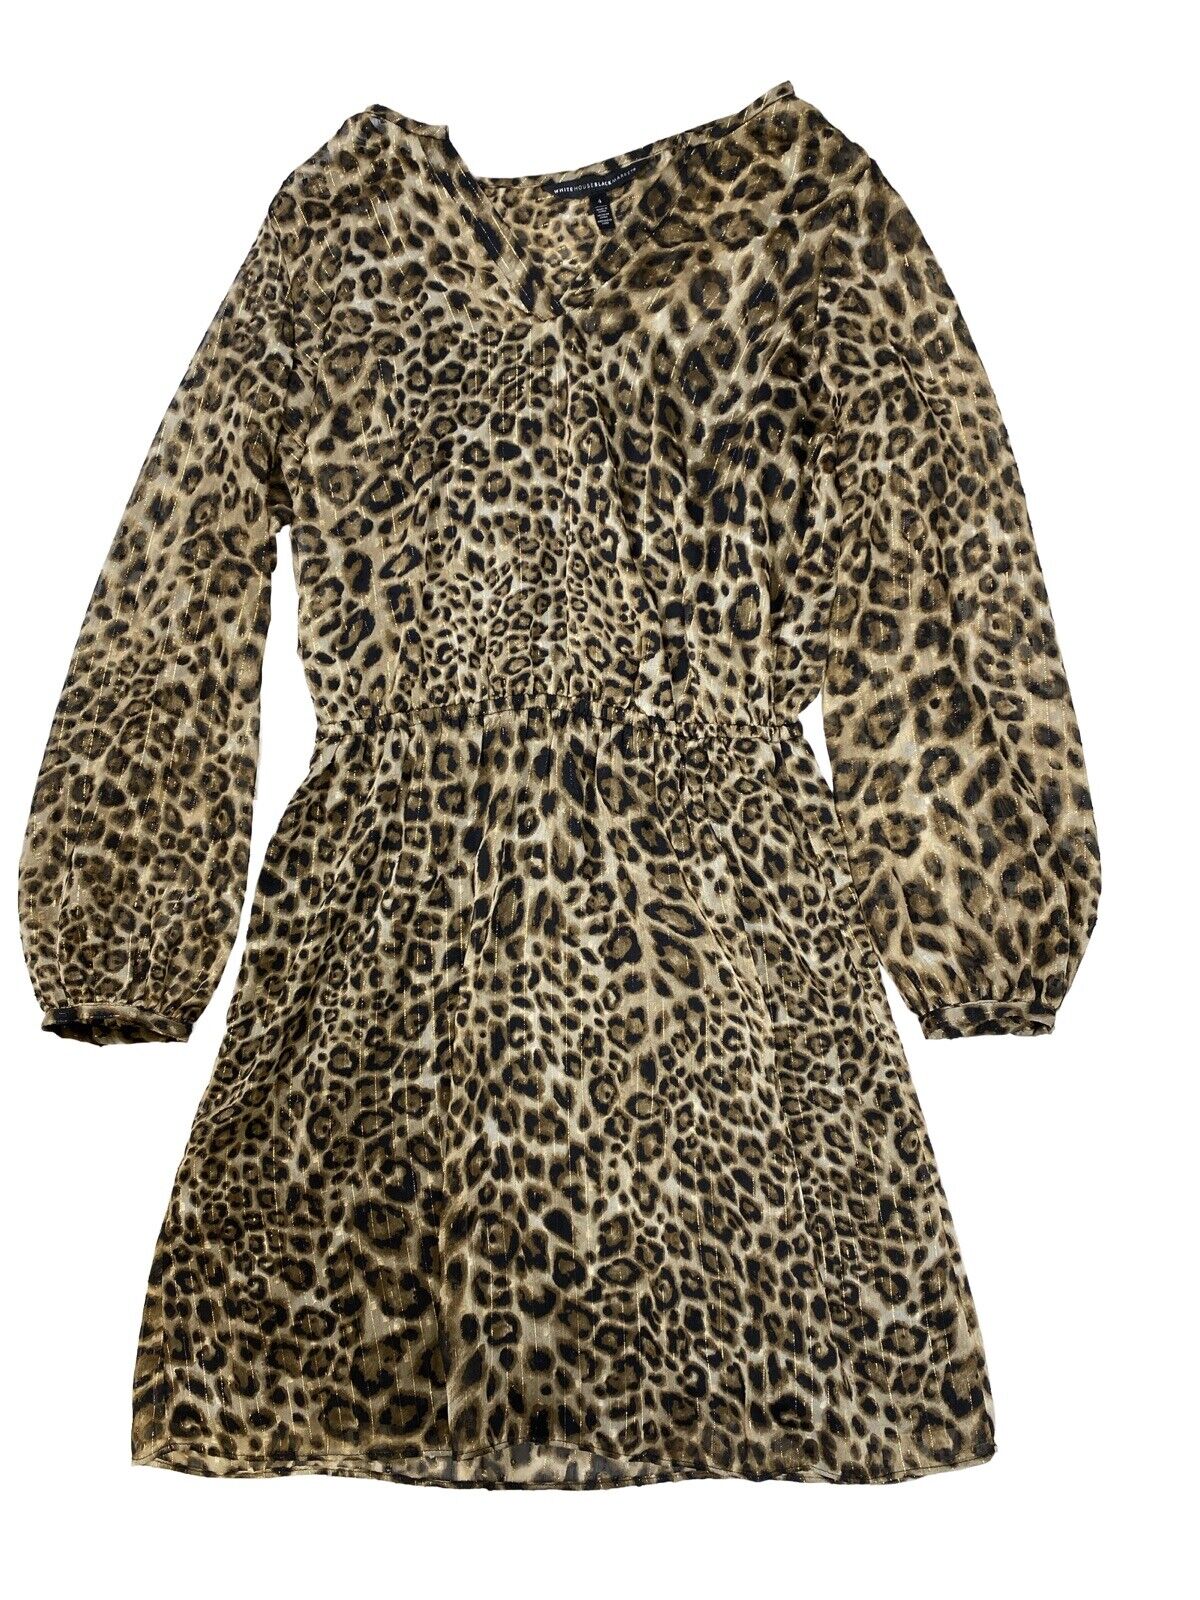 White House Black Market Women's Brown Leopard Print Blouson Dress - 4